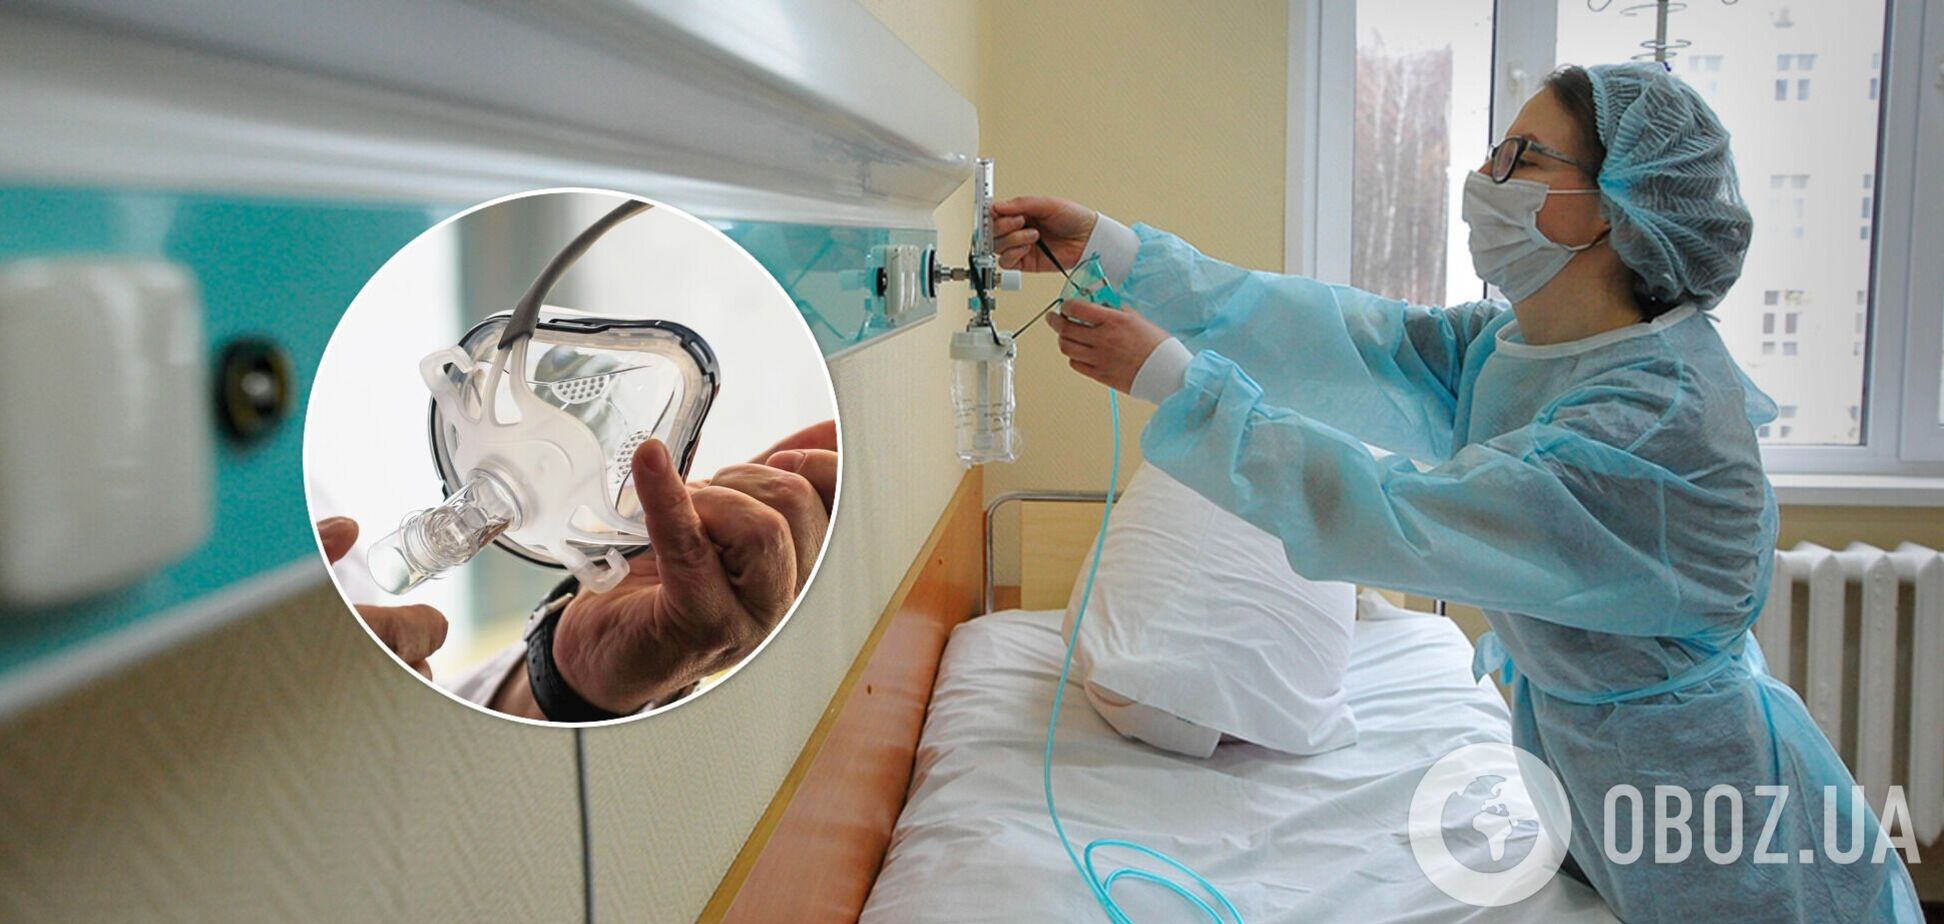 Известная волонтер рассказала, как украинцев с тяжелой формой коронавируса выписывают умирать дома. Документы